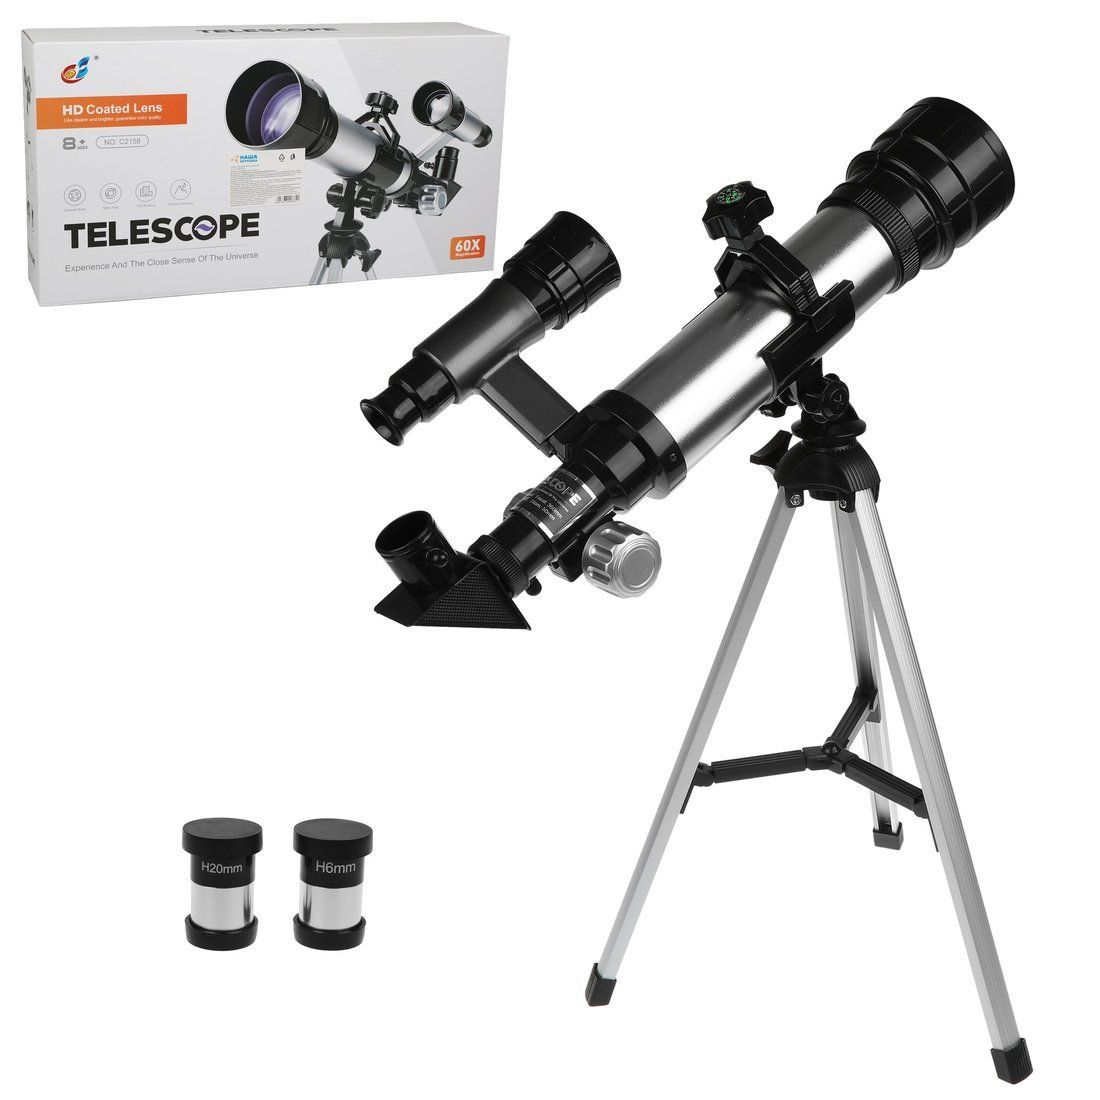 Телескоп детский 60х увеличение,  3 объектива, кор